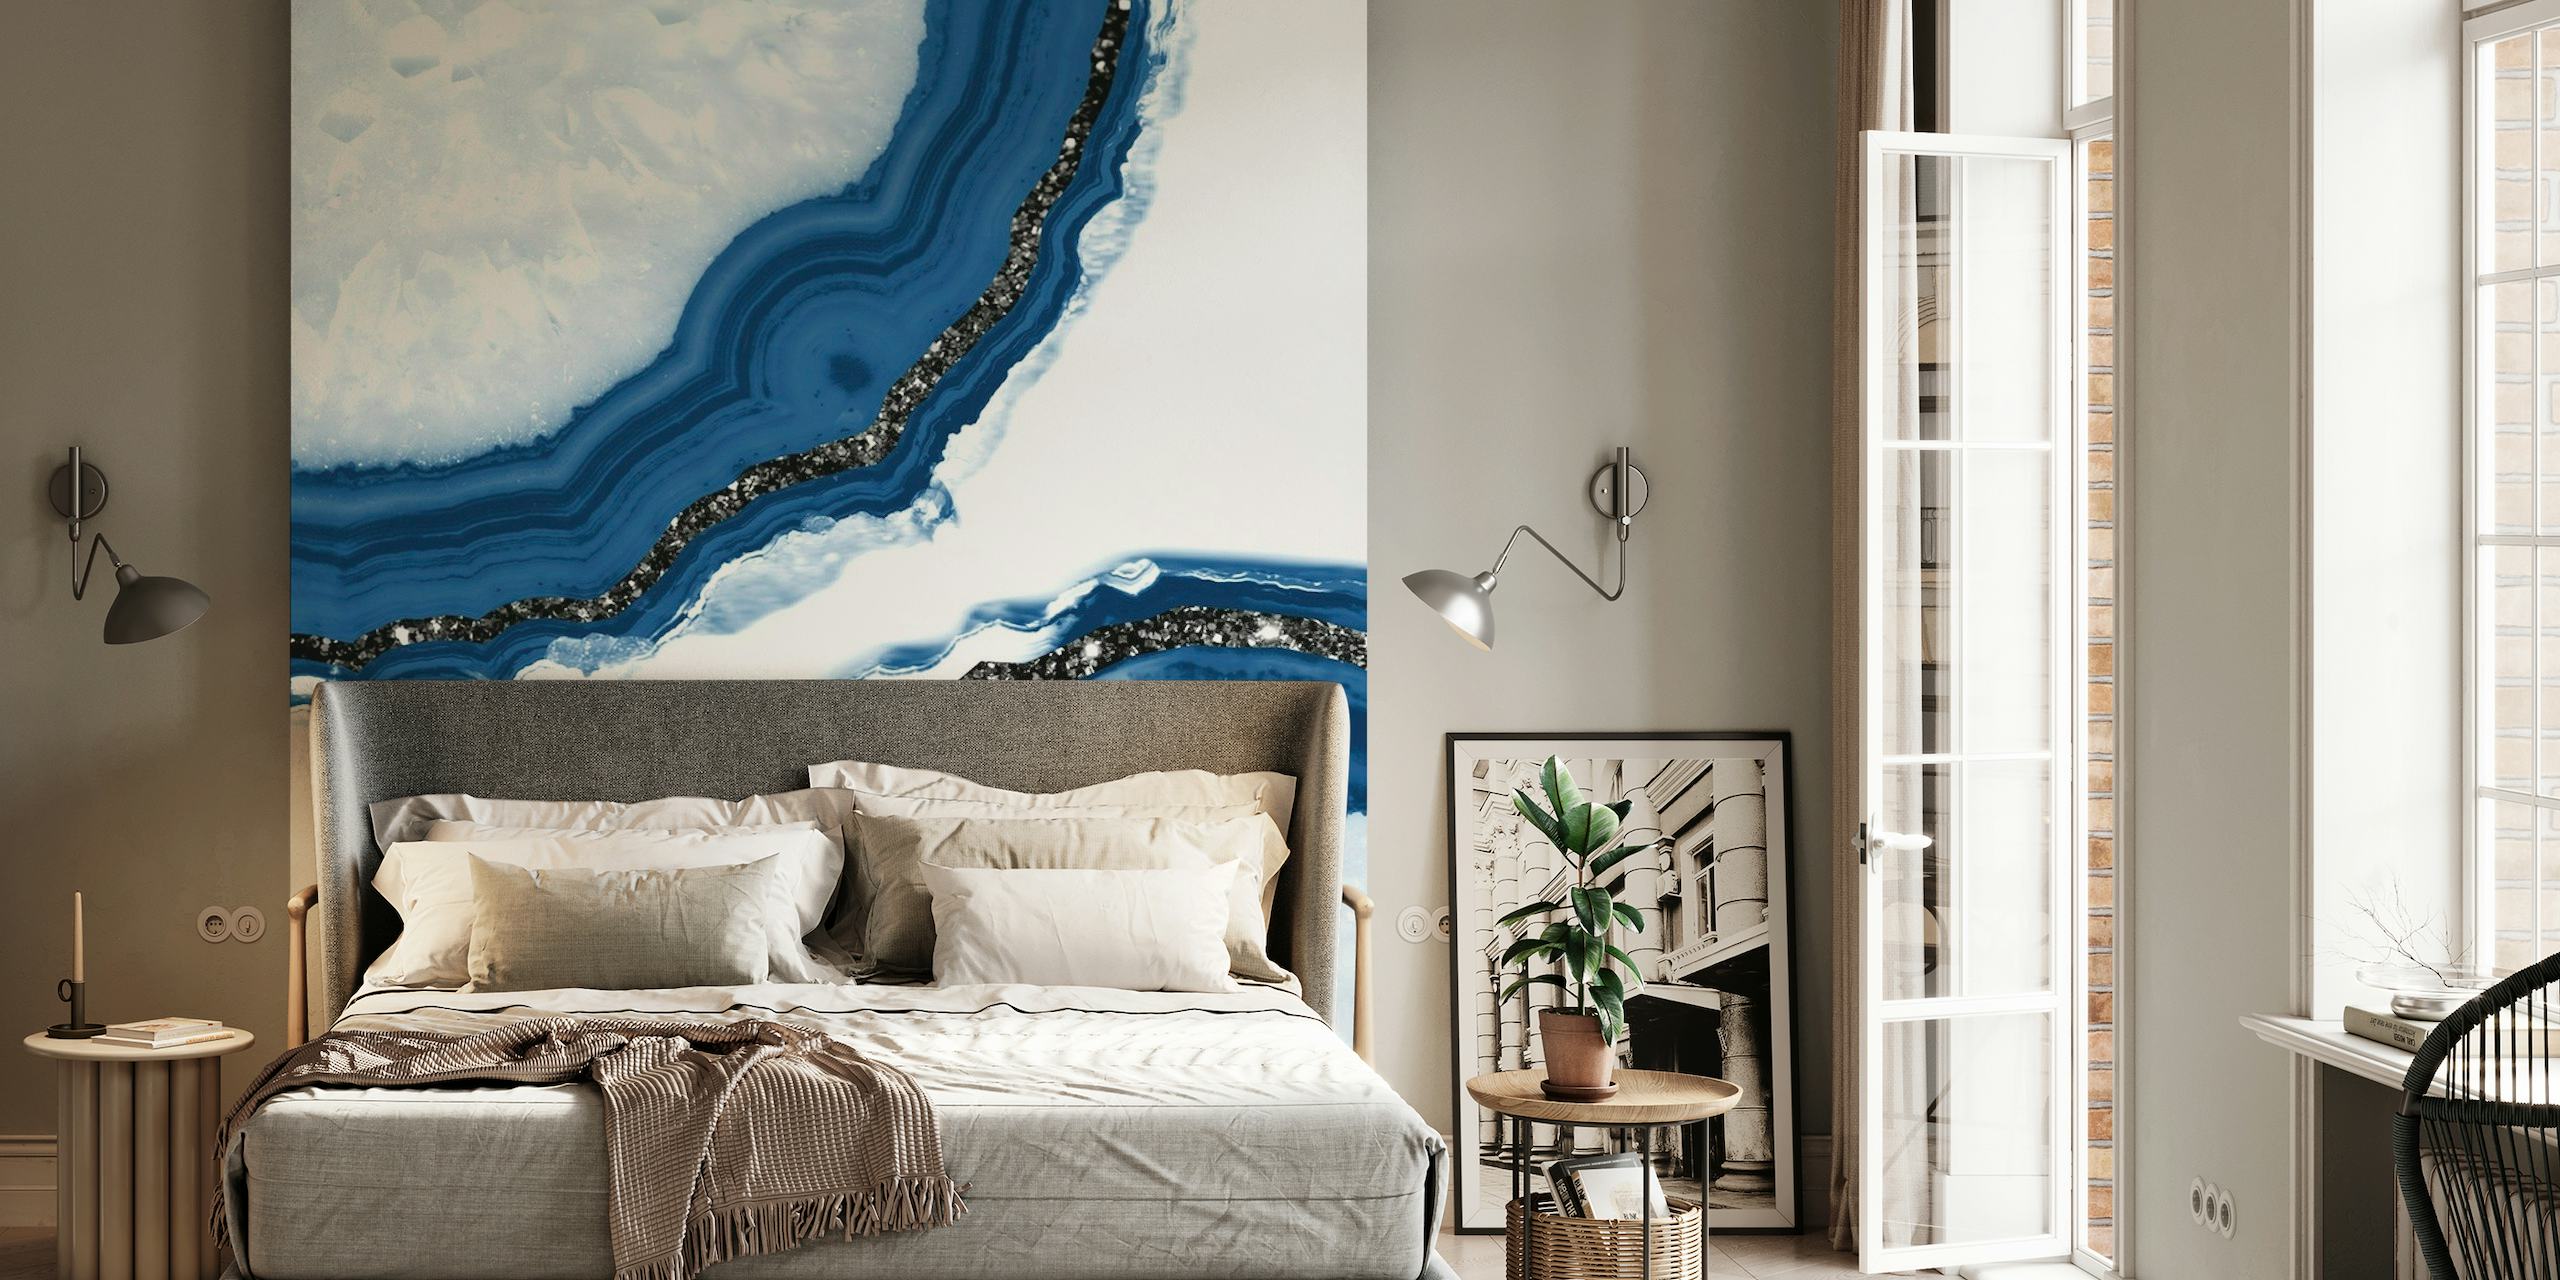 Élégante fresque murale inspirée de l'agate avec des motifs bleus et blancs et des accents de paillettes